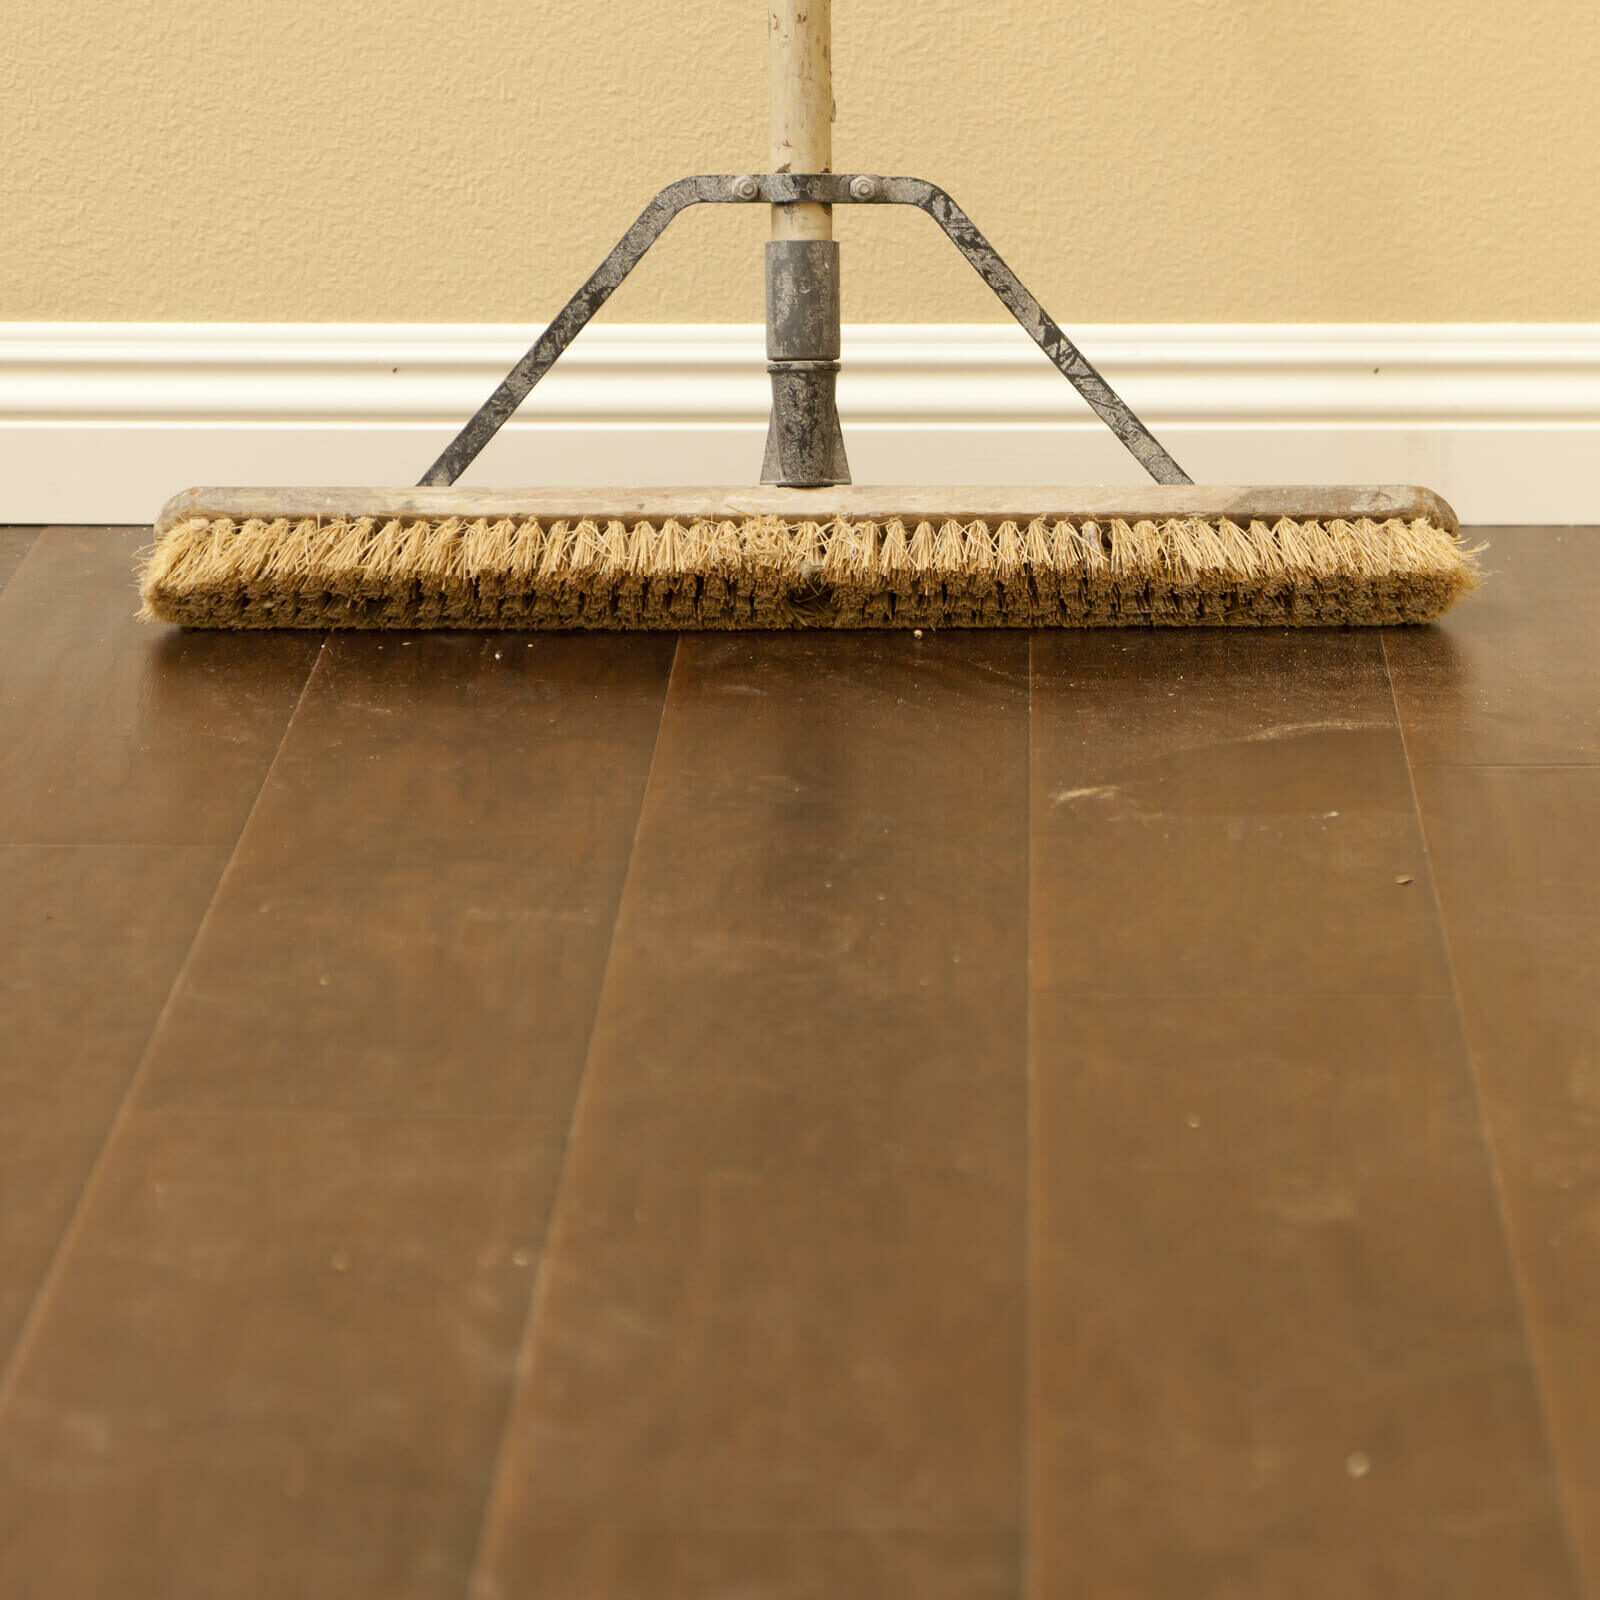 hardwood care and maintenance | Yates Flooring